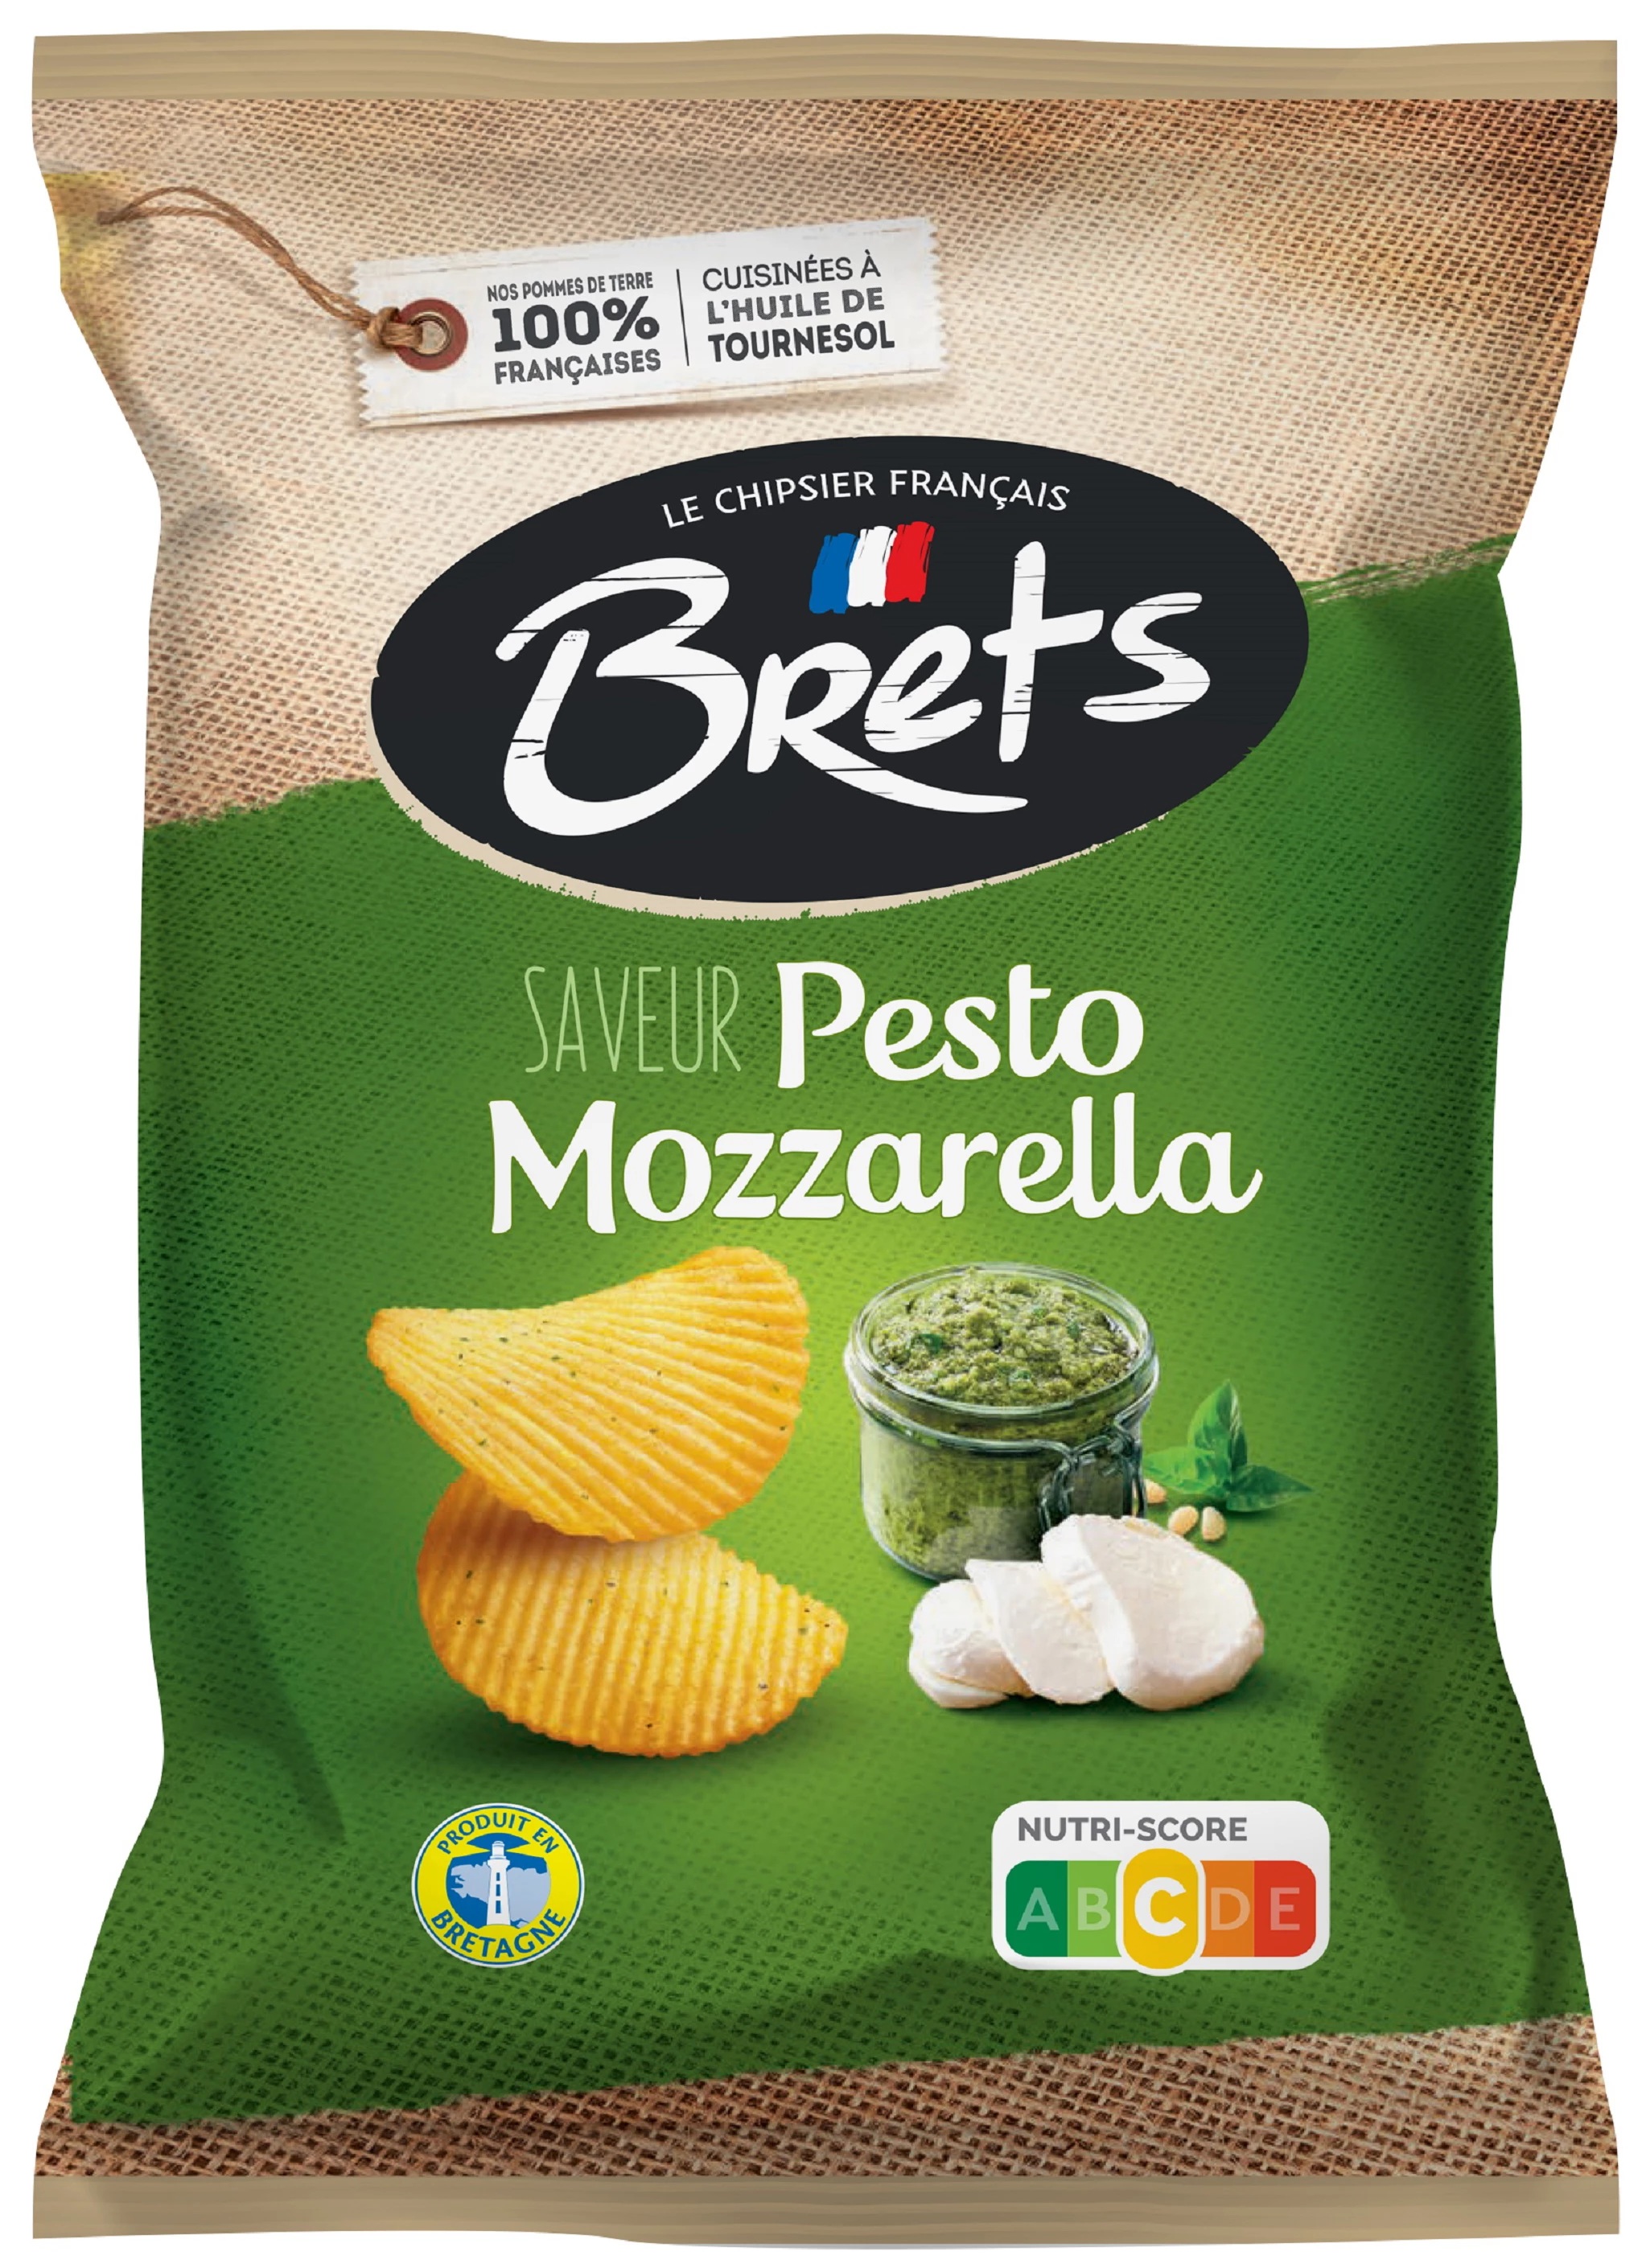 Patatine Fritte Bret's Pesto Mozza, 125g - BRET'S